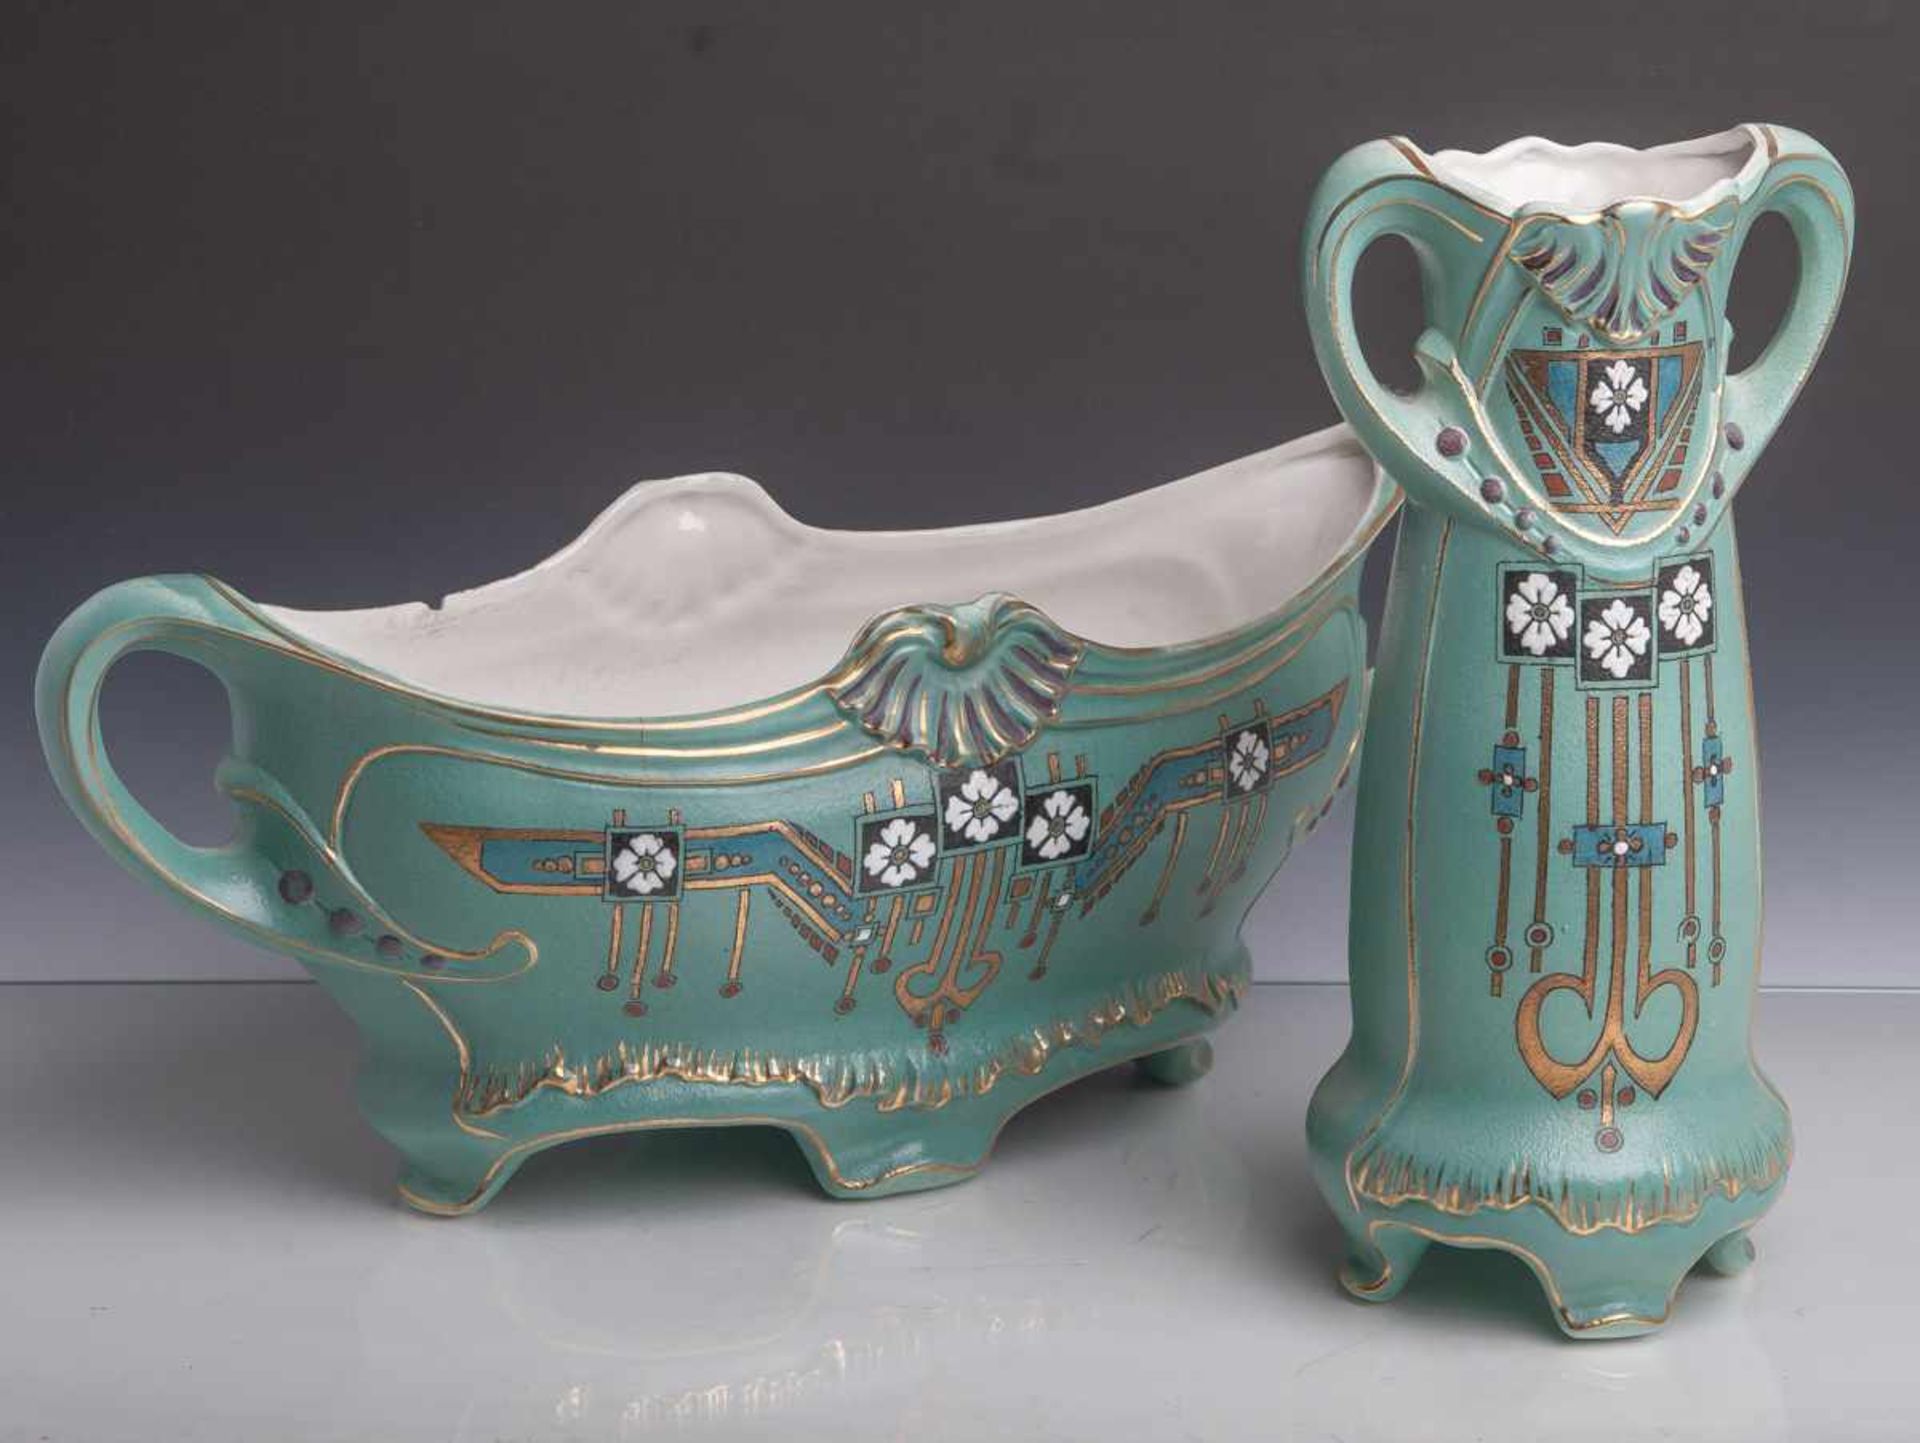 Vase u. Jardinière (Ende 19./Anfang 20. Jahrhundert, Jugendstil), Keramik, türkiser Fondmit